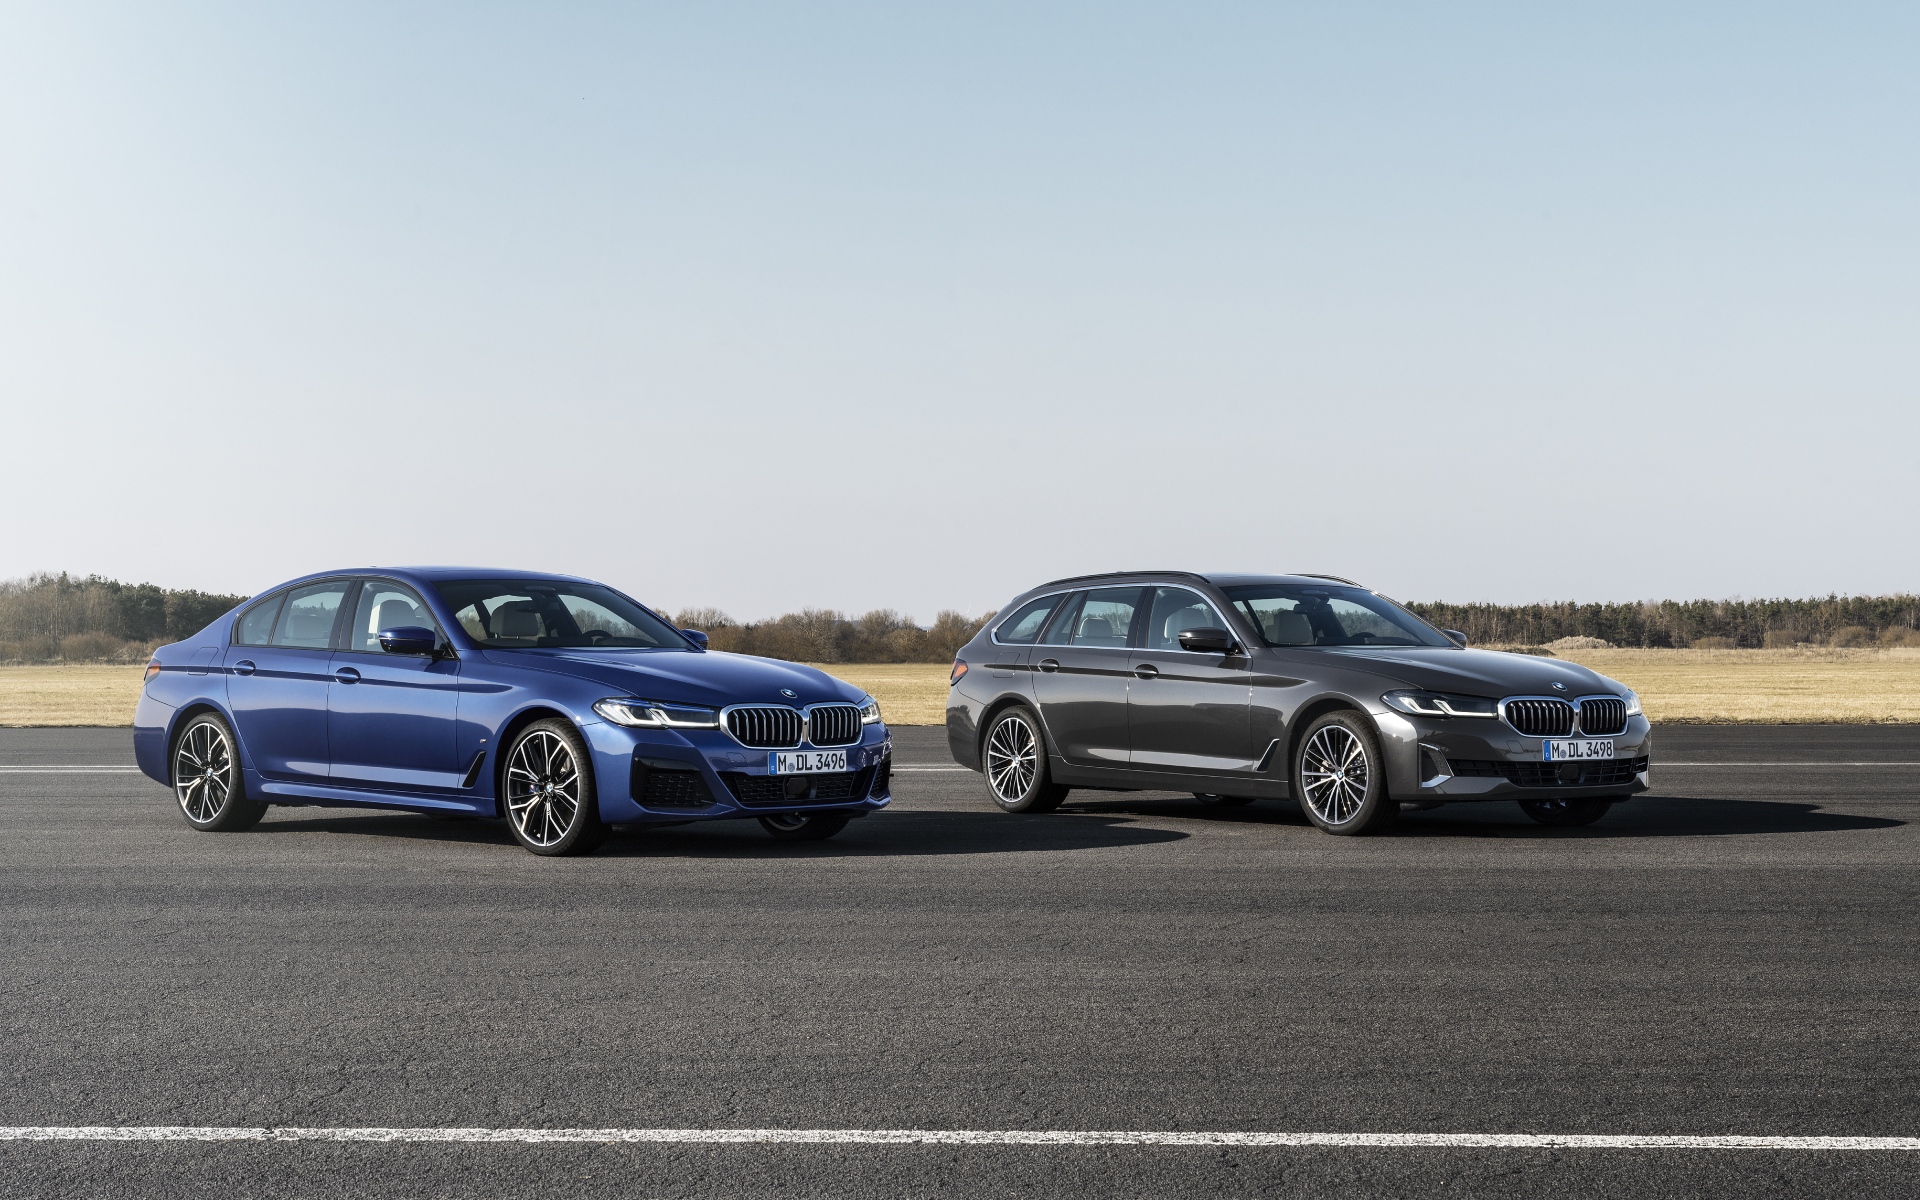 neef Grace verwennen De vernieuwde BMW 5 Serie in 15 highlights - AutoRAI.nl